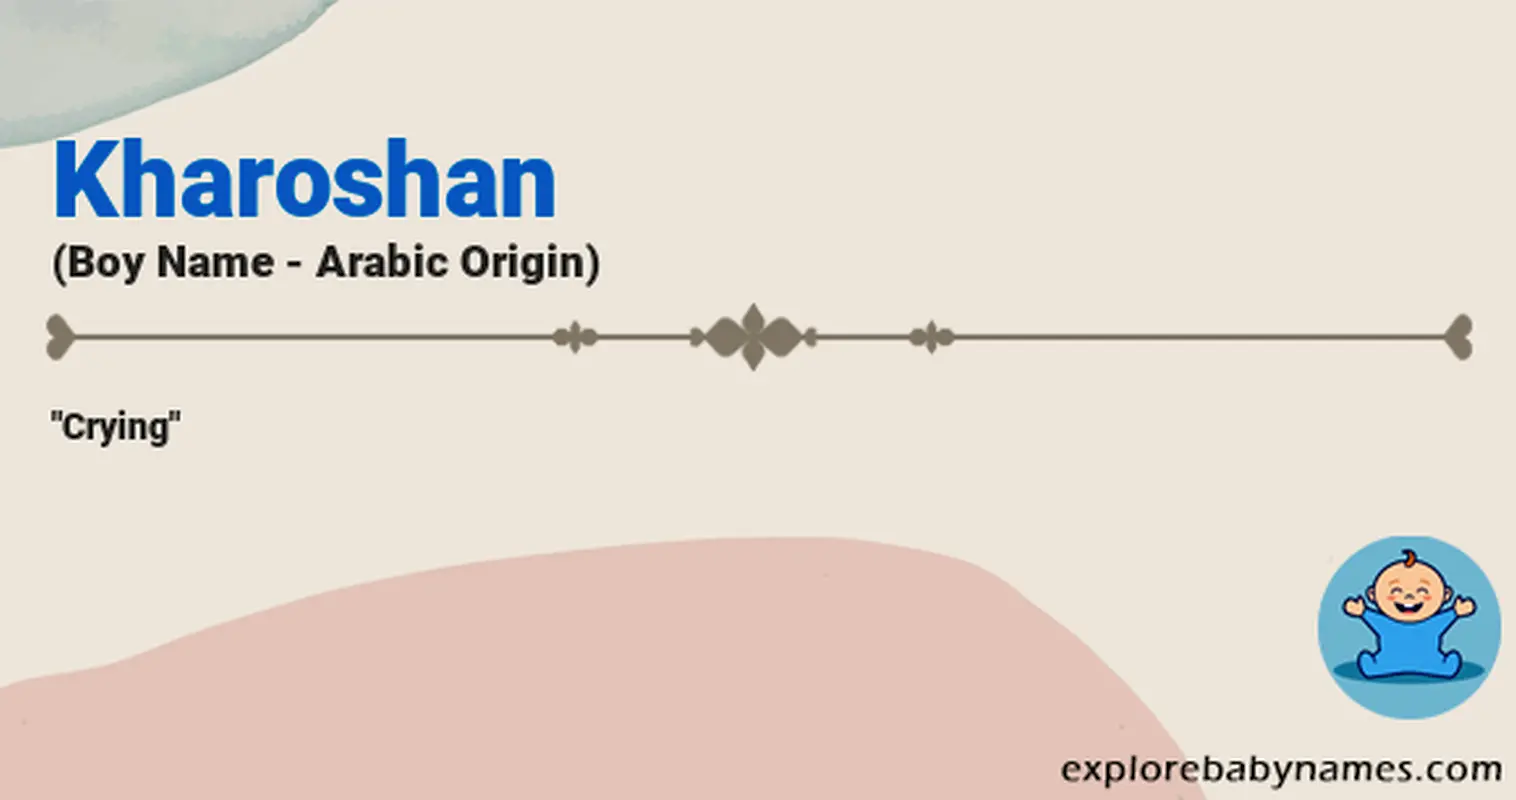 Meaning of Kharoshan